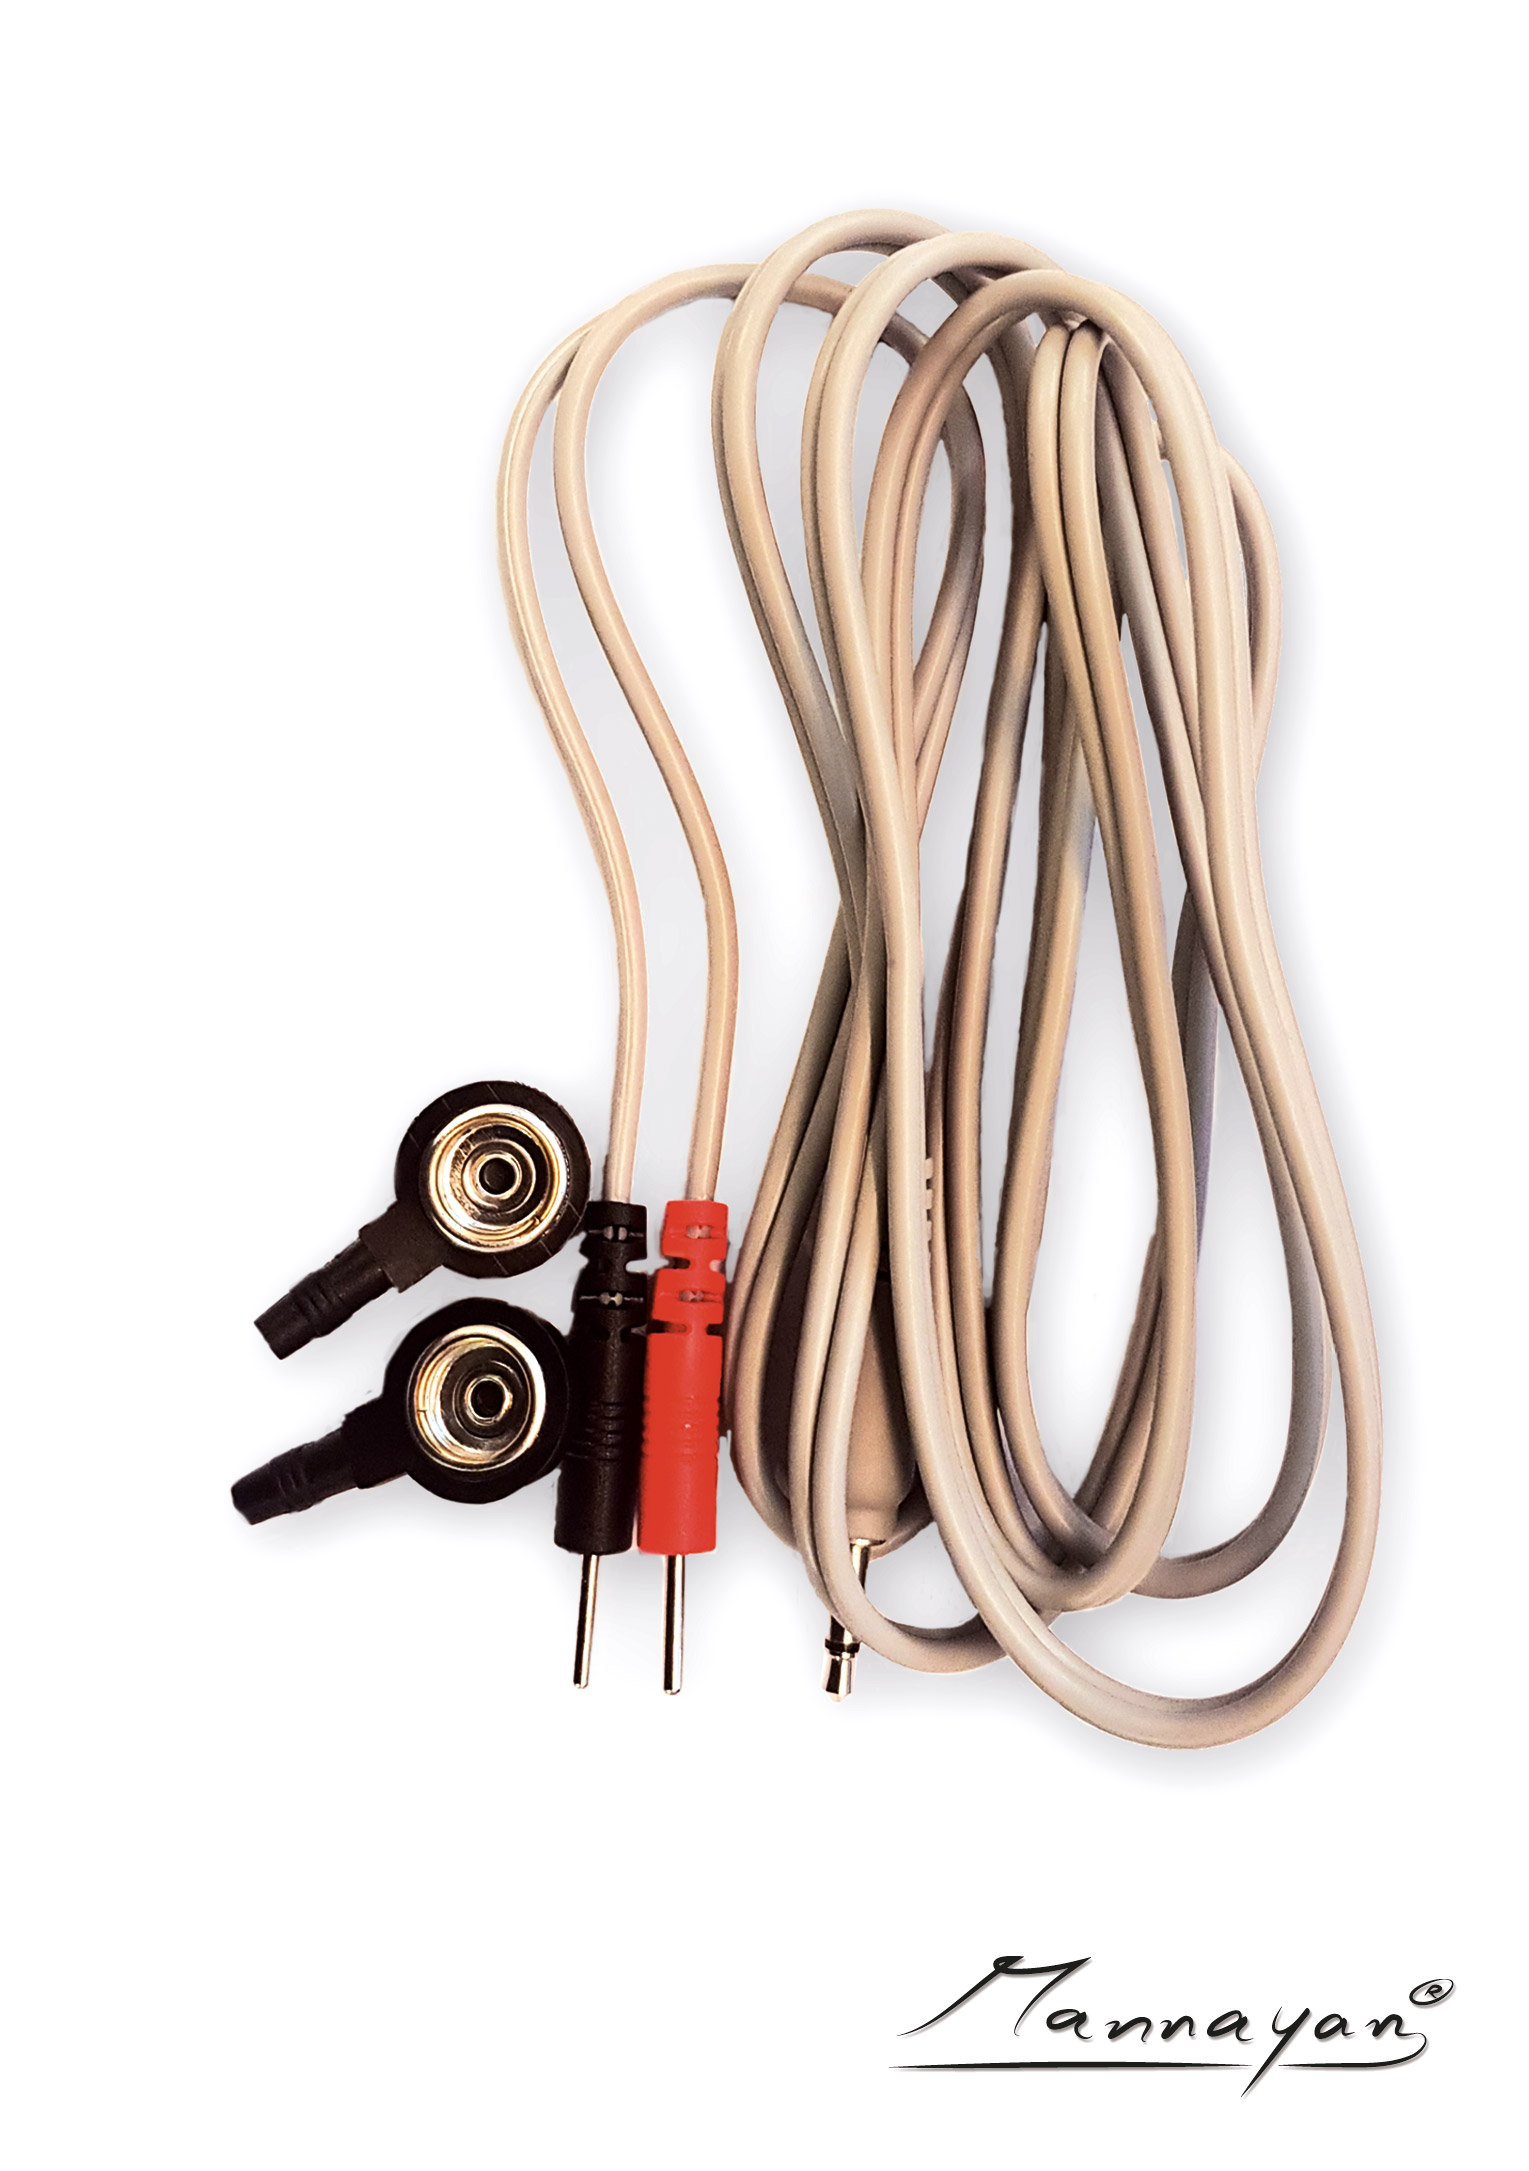 Podwójny kabel do Diamond Shield (szary) wraz z adapterami przycisków (2x10 mm)